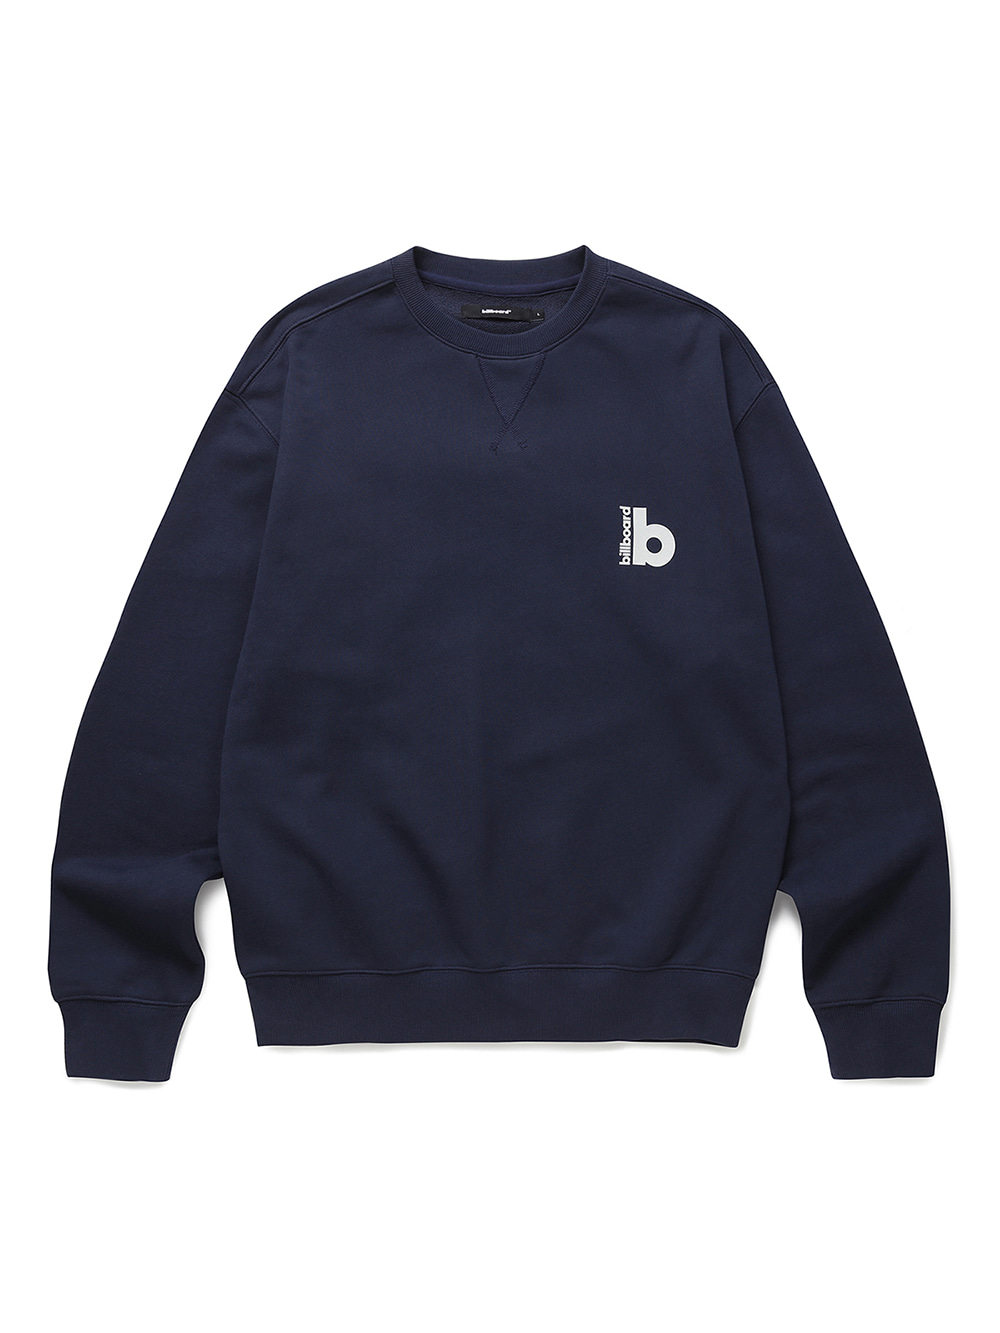 Billboard Global B Logo Sweatshirt_Navy